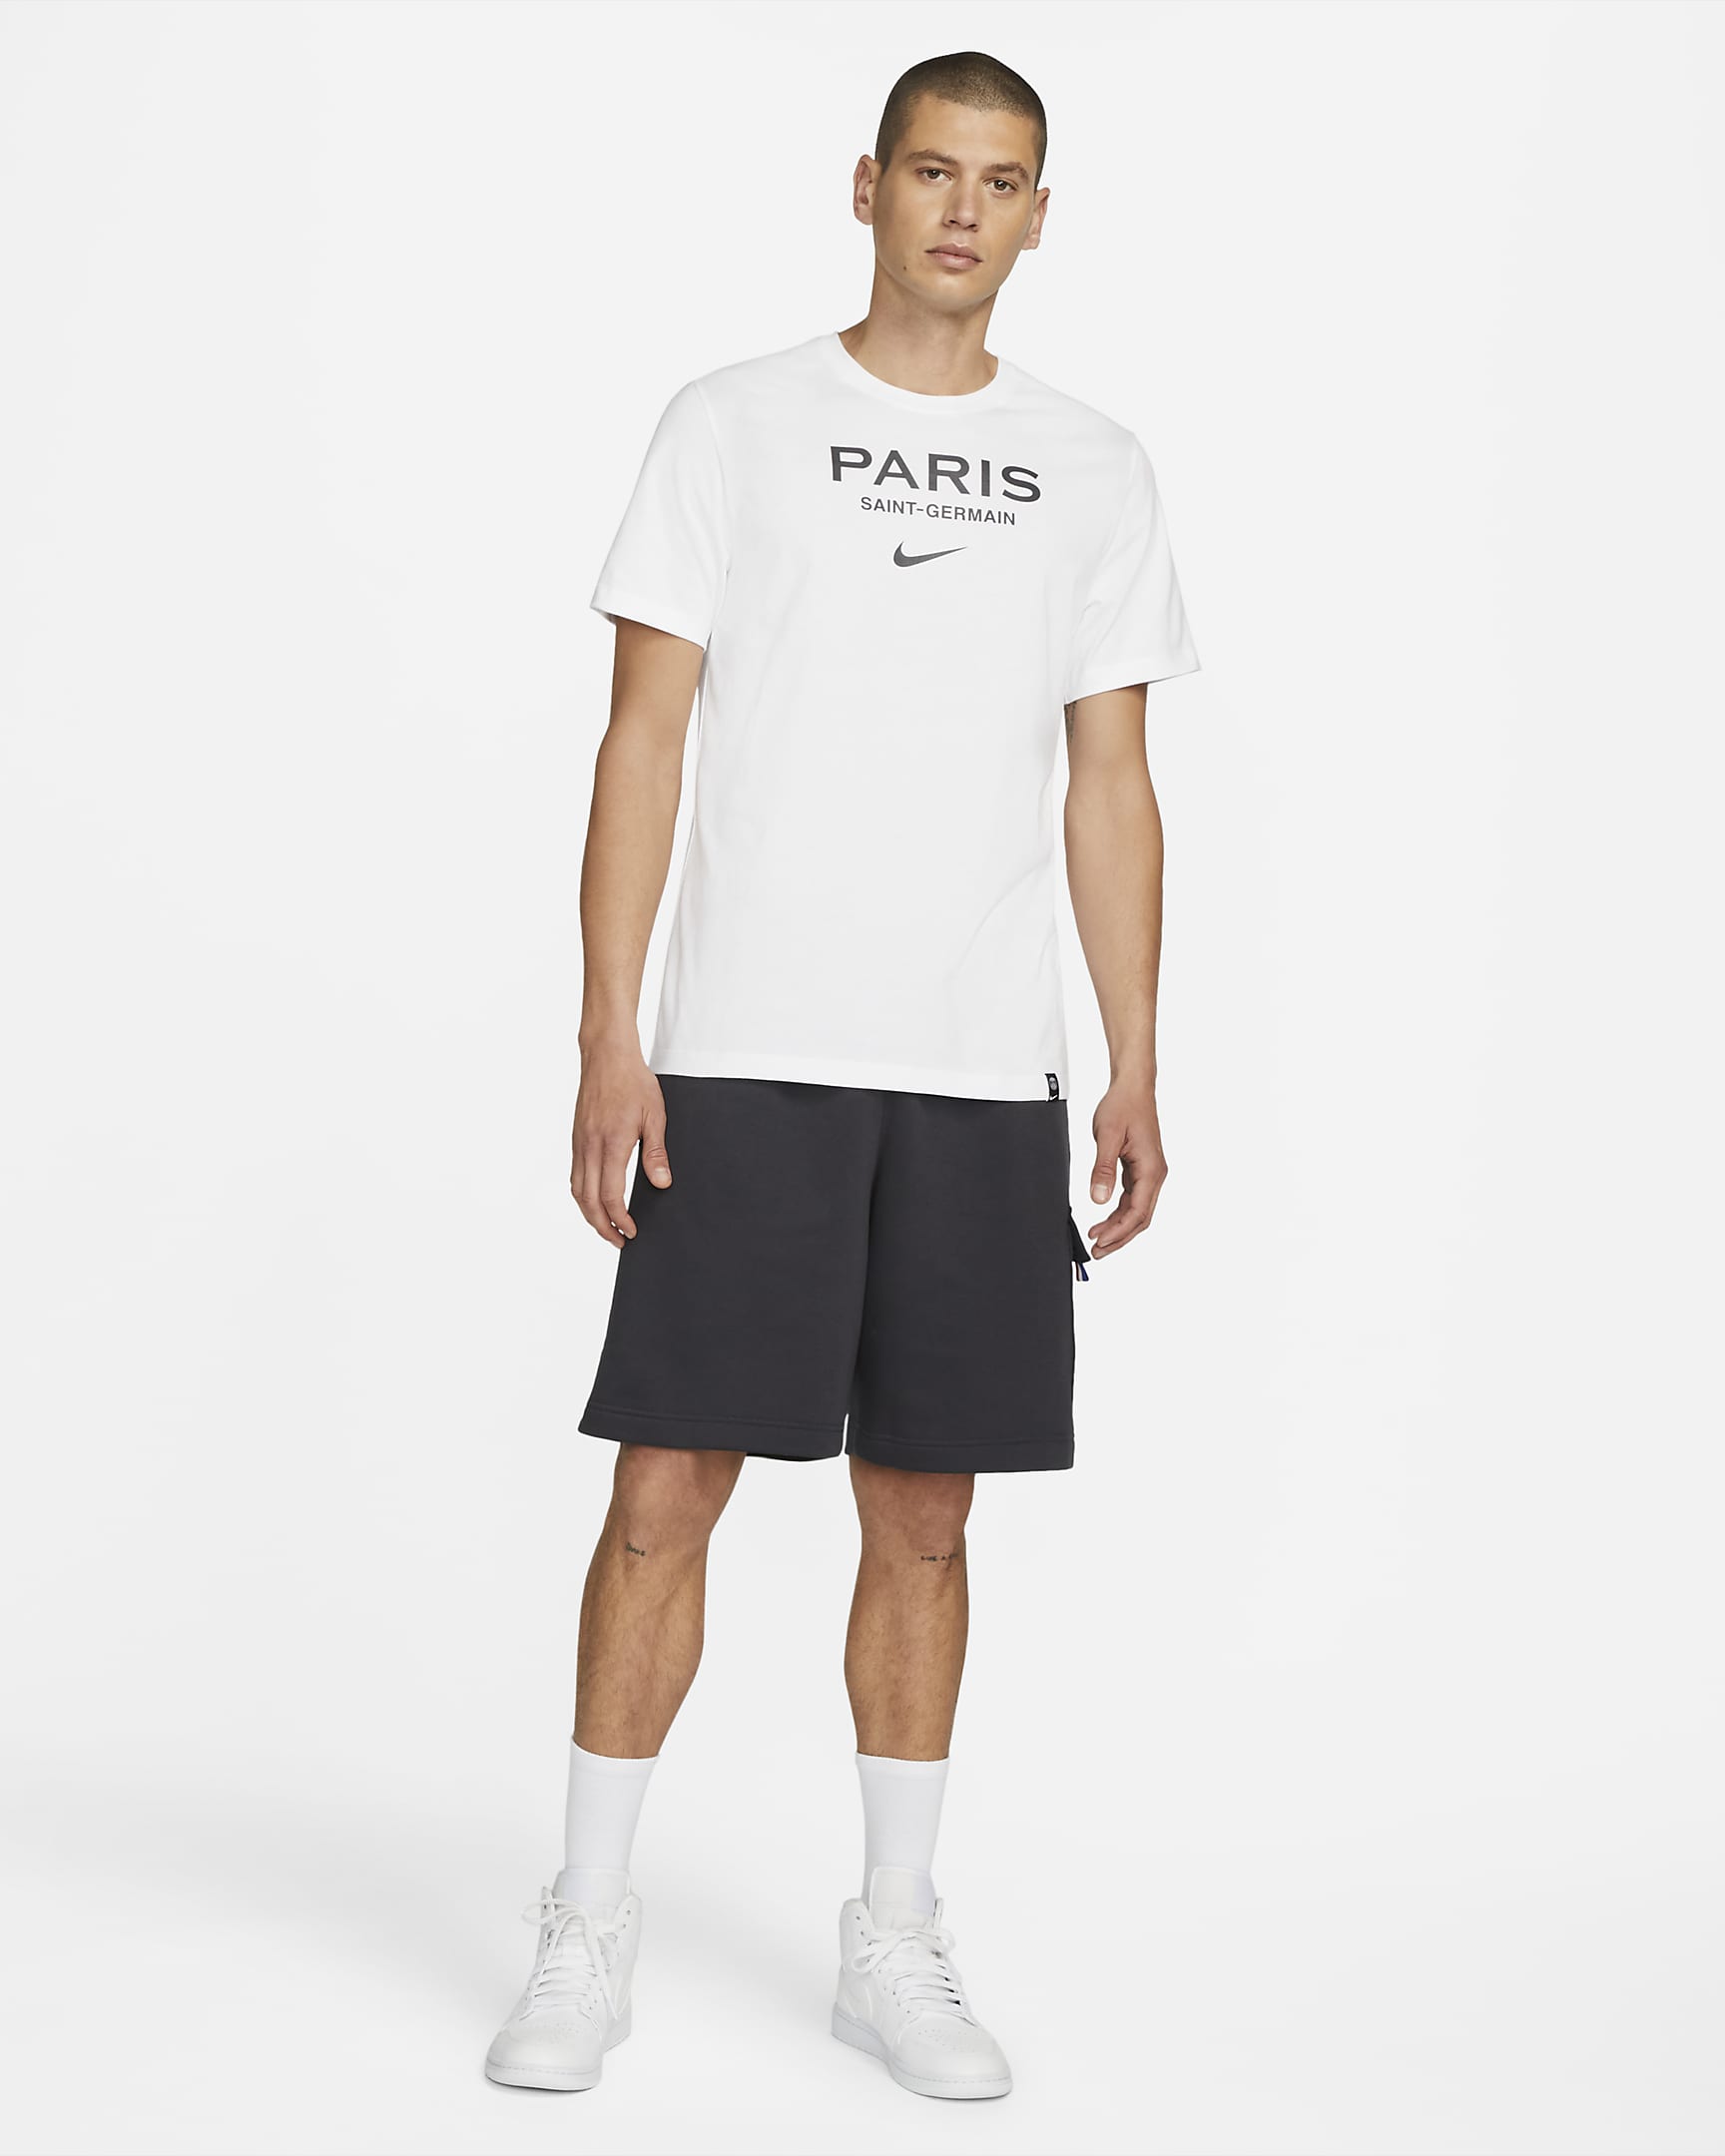 Paris Saint-Germain Swoosh Men's Soccer T-Shirt. Nike JP